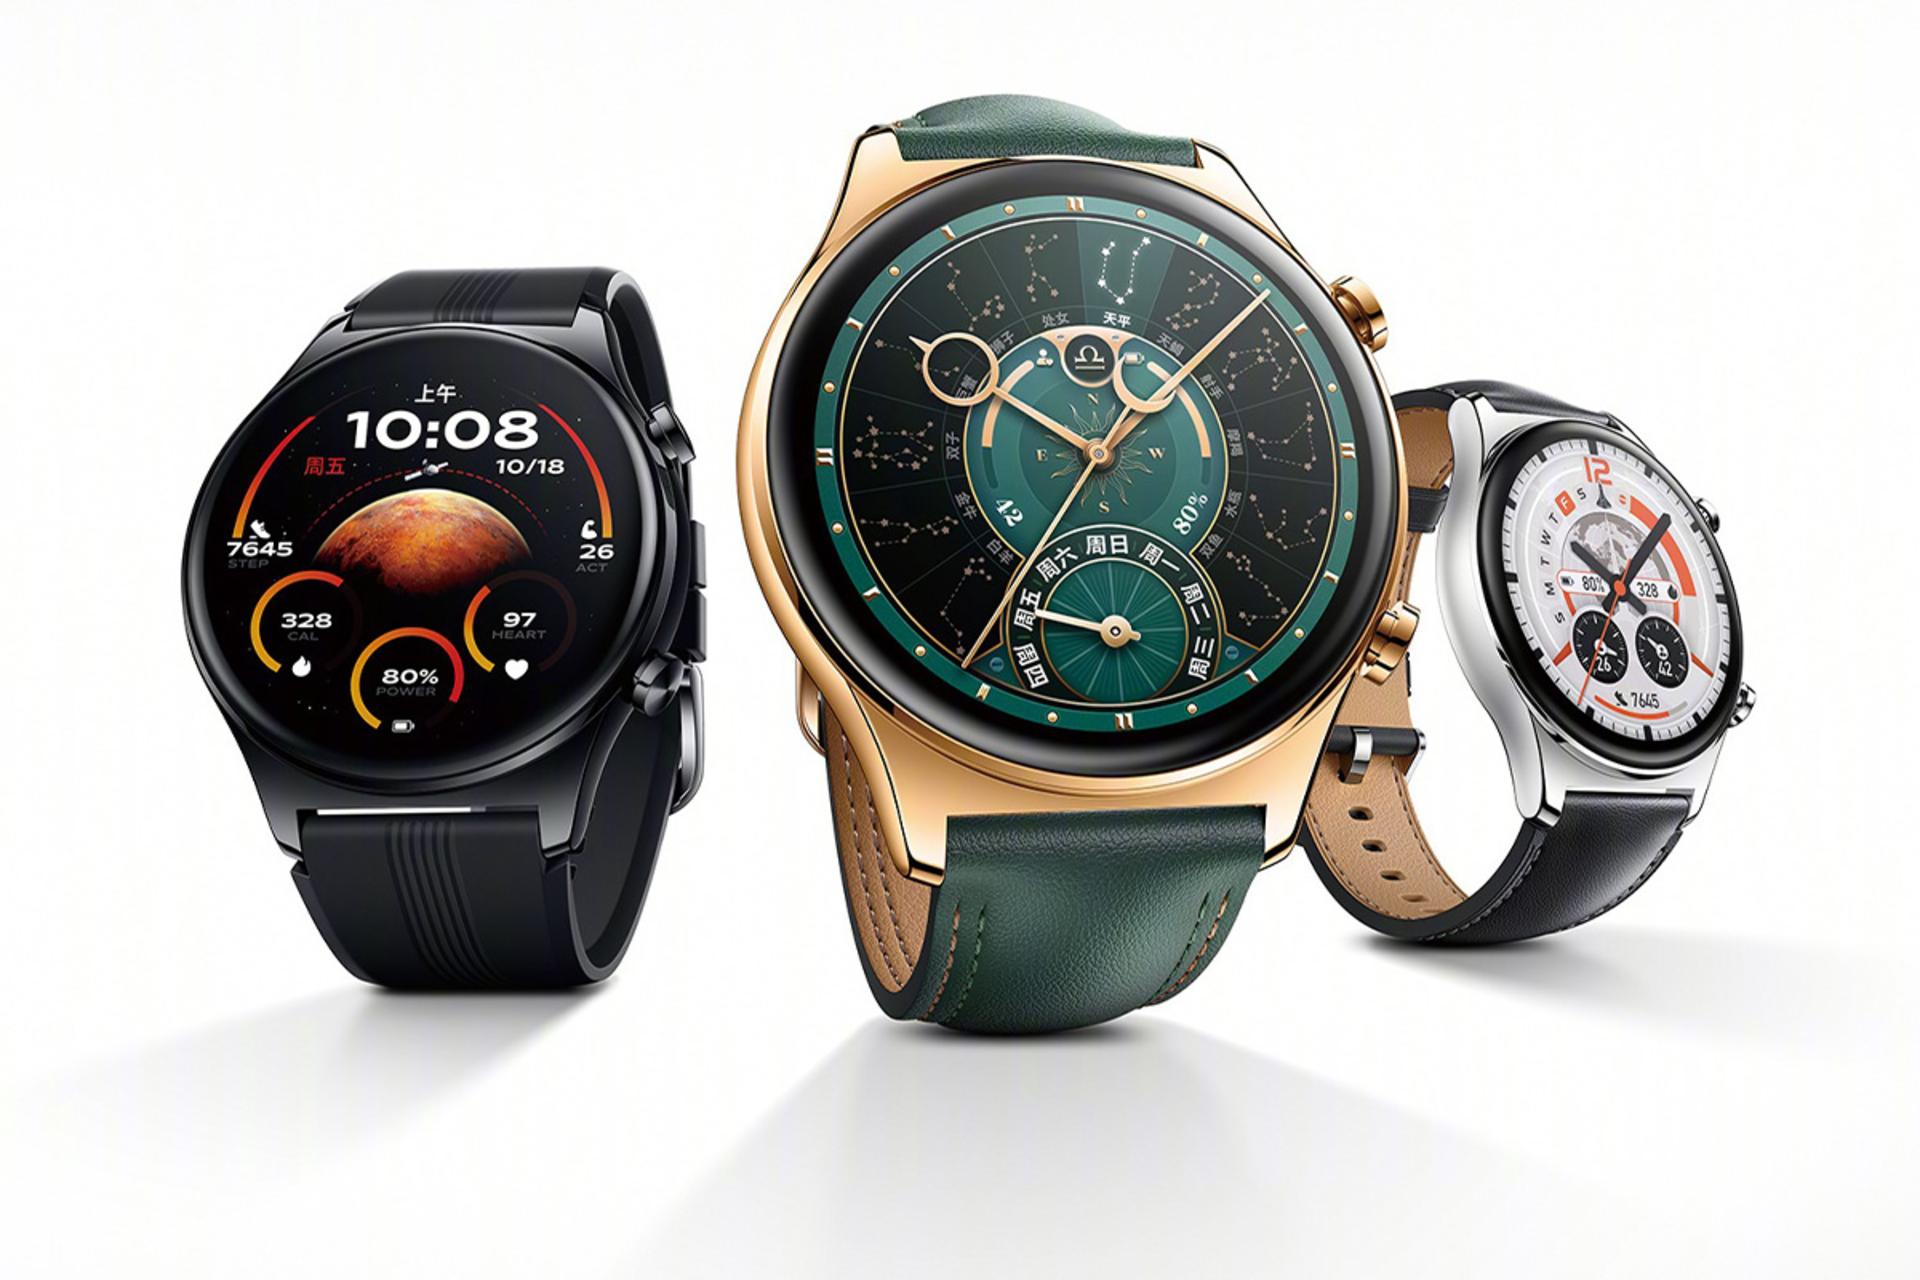 مرجع متخصصين ايران ساعت هوشمند آنر GS 4 در سه رنگ صدفي، مشكي و بژ